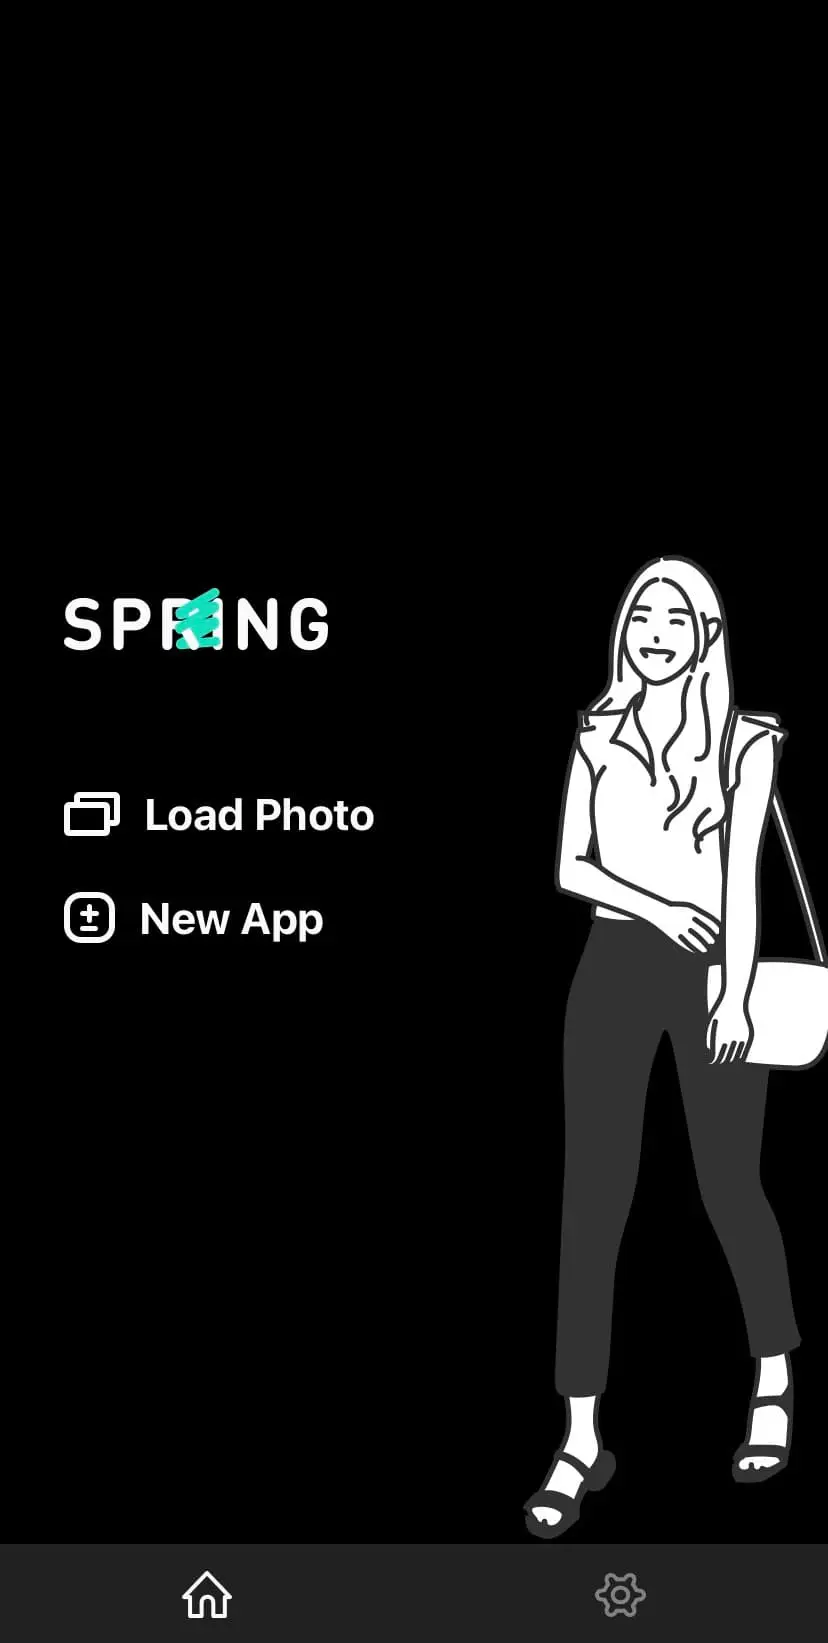 Mở ứng dụng Spring và vào biểu tượng Load Photo